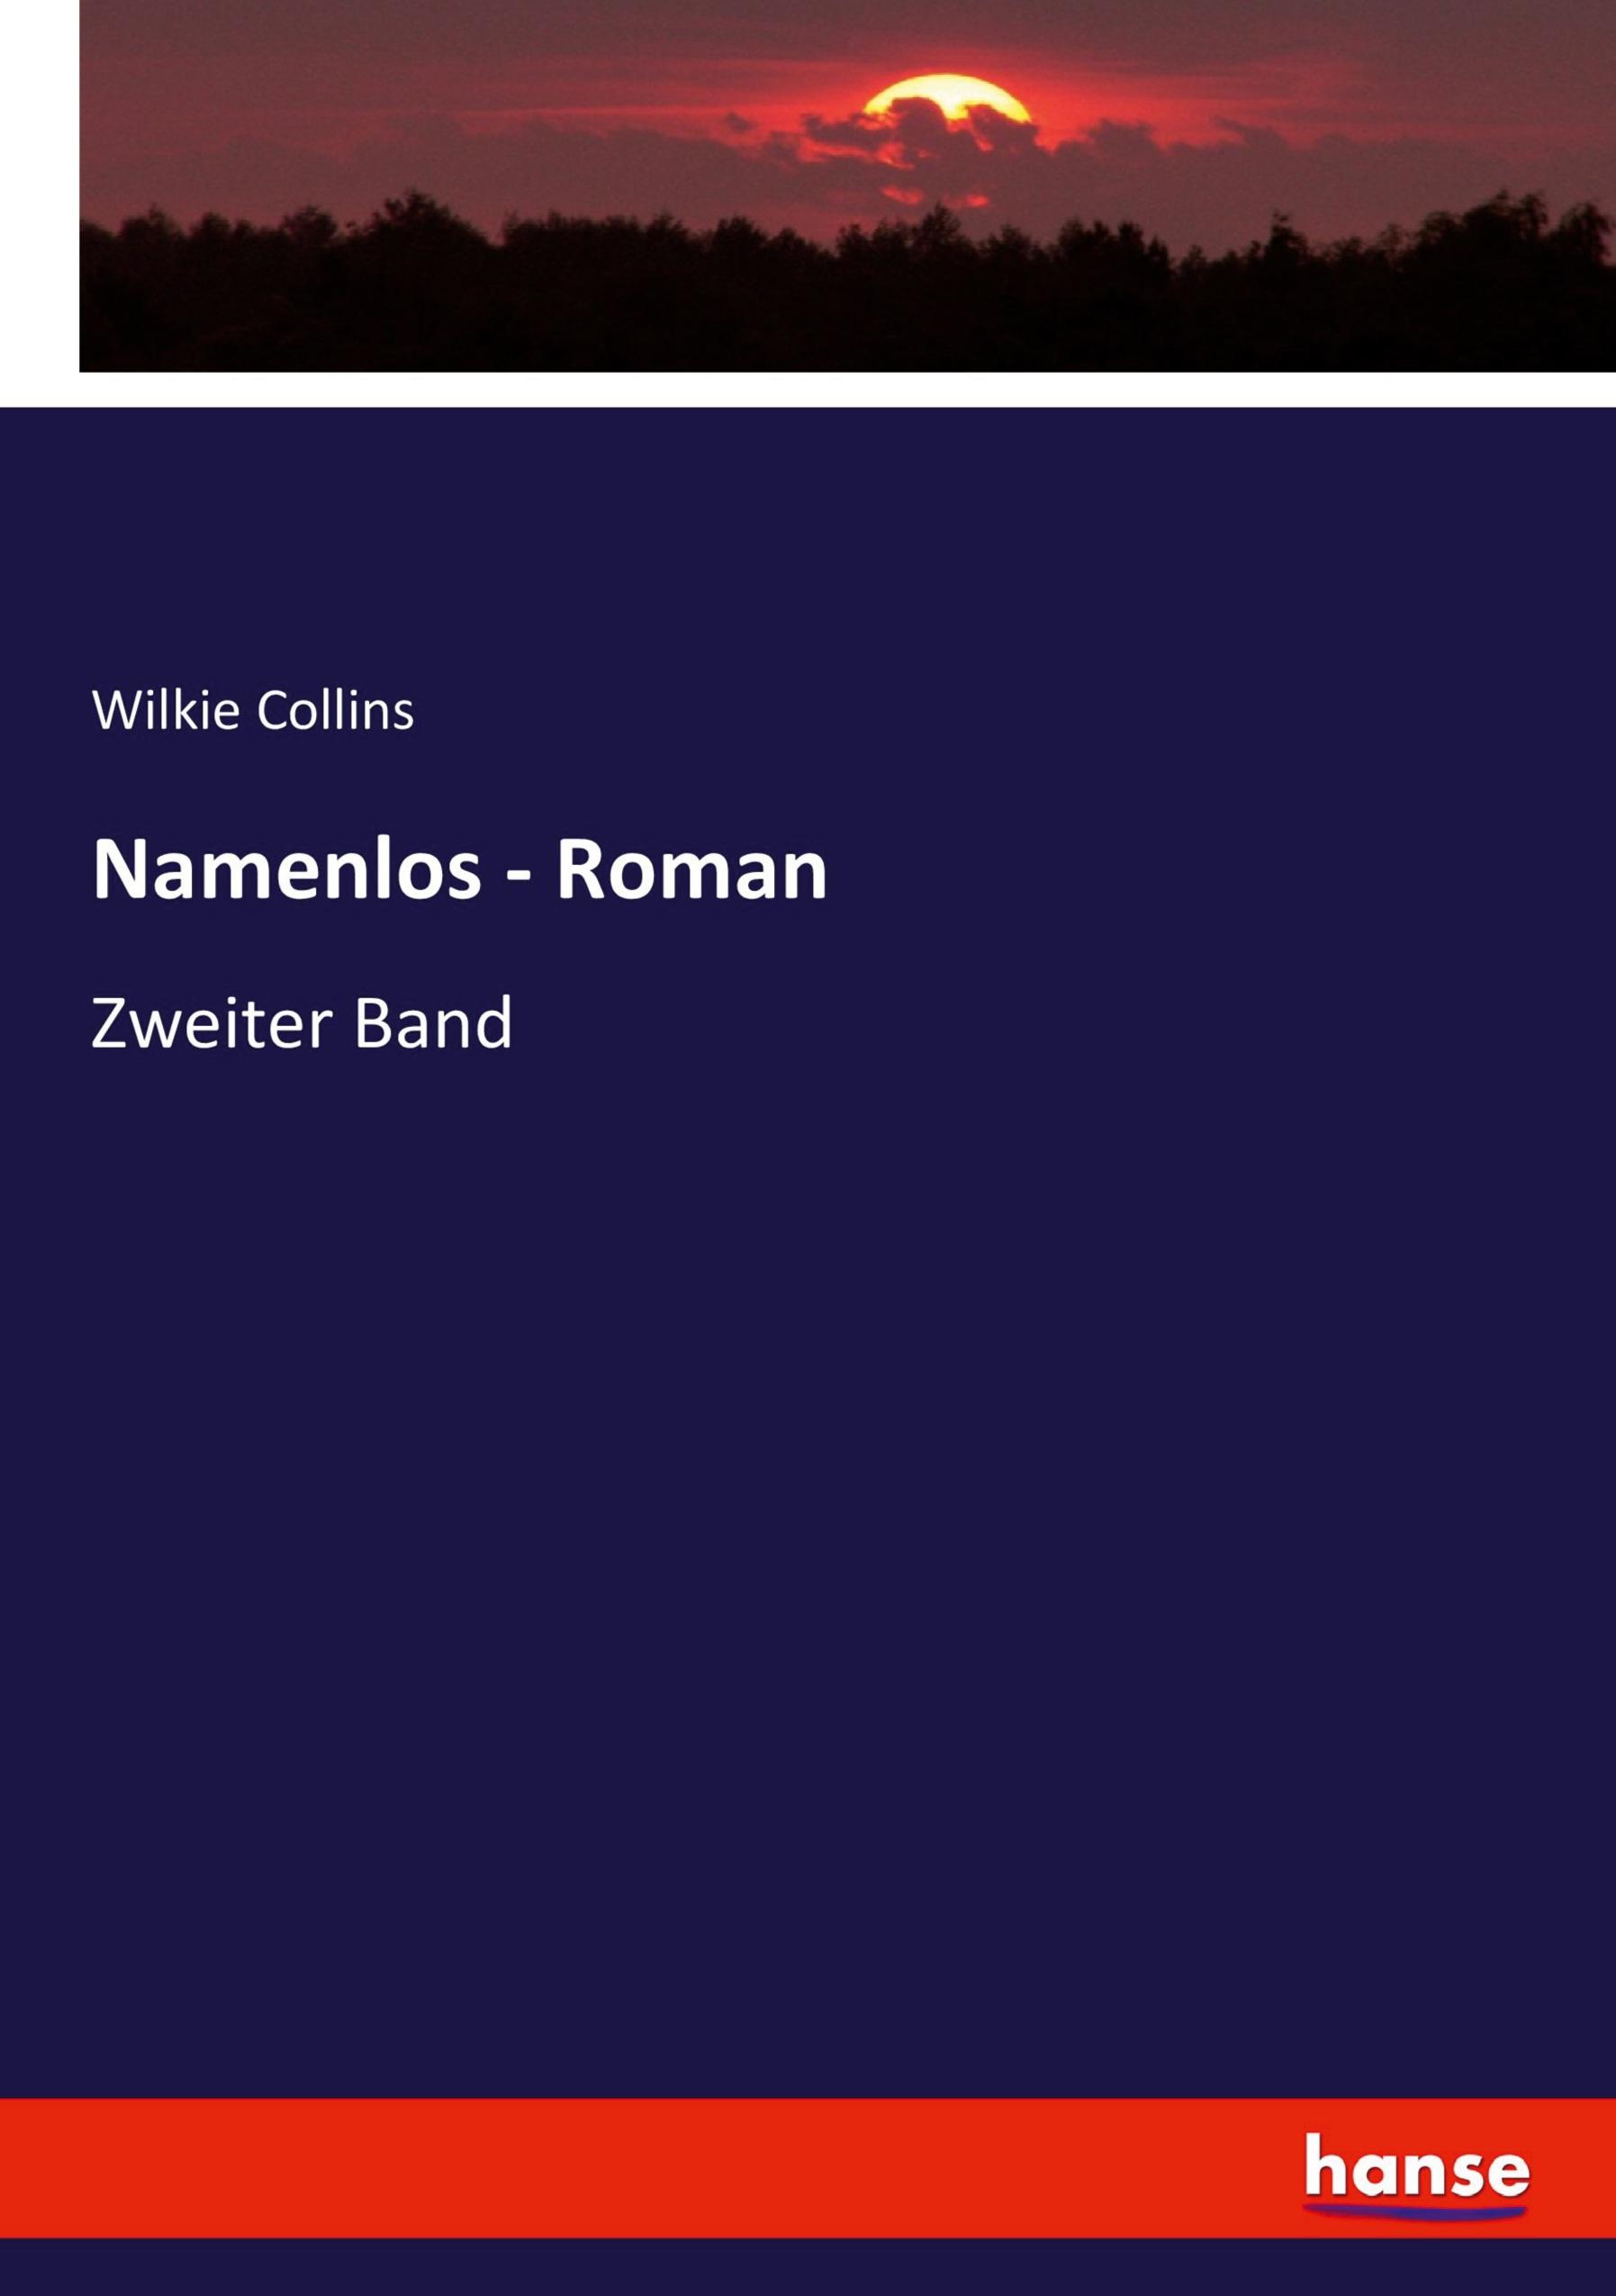 Namenlos - Roman | Zweiter Band | Wilkie Collins | Taschenbuch | Paperback | 236 S. | Deutsch | 2020 | hansebooks | EAN 9783744645119 - Collins, Wilkie